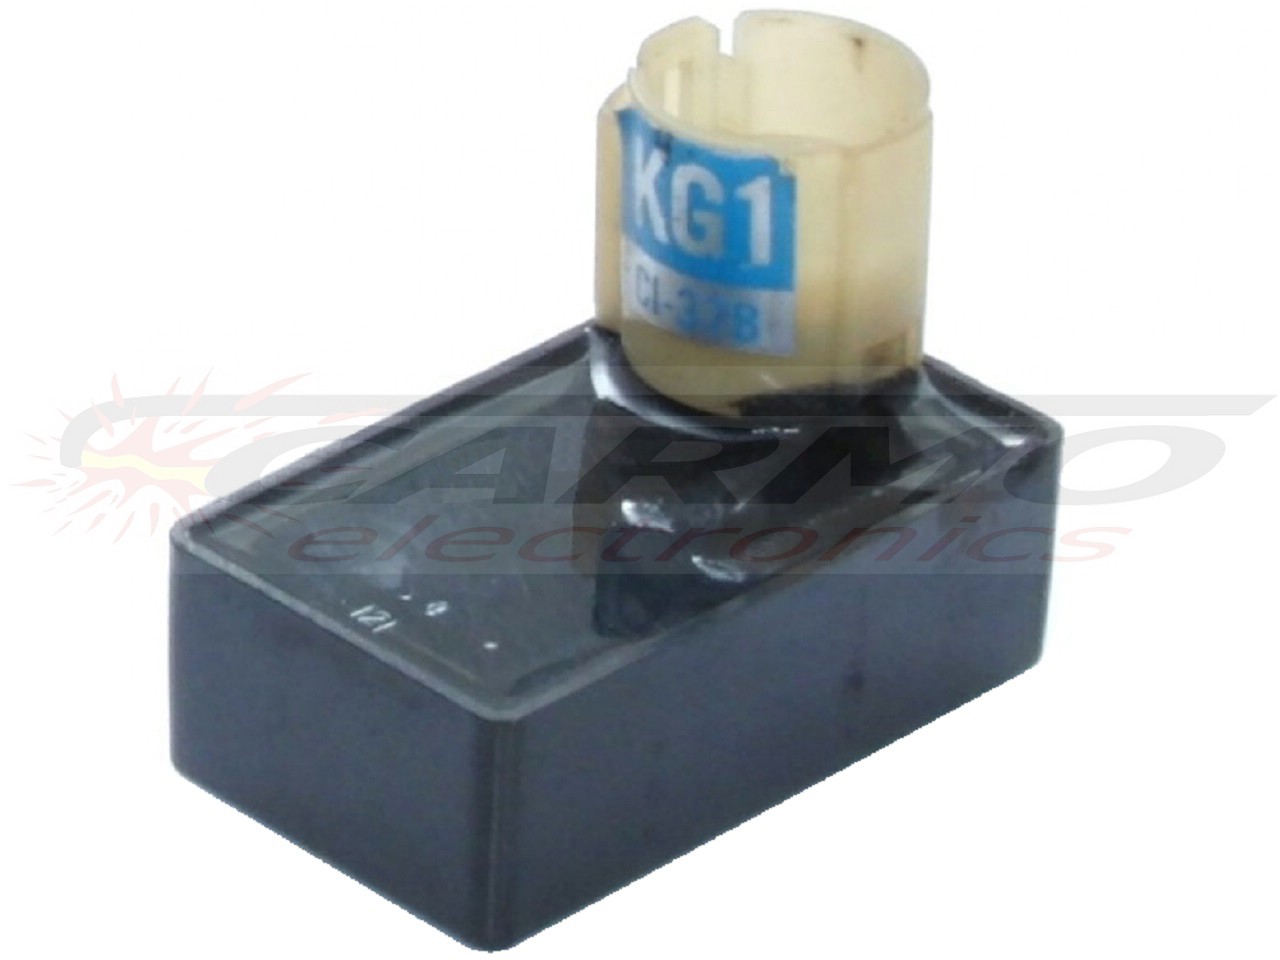 XL200 XL200R ignição/ módulo de ignição CDI TCI Box (KG1, CI-37B)